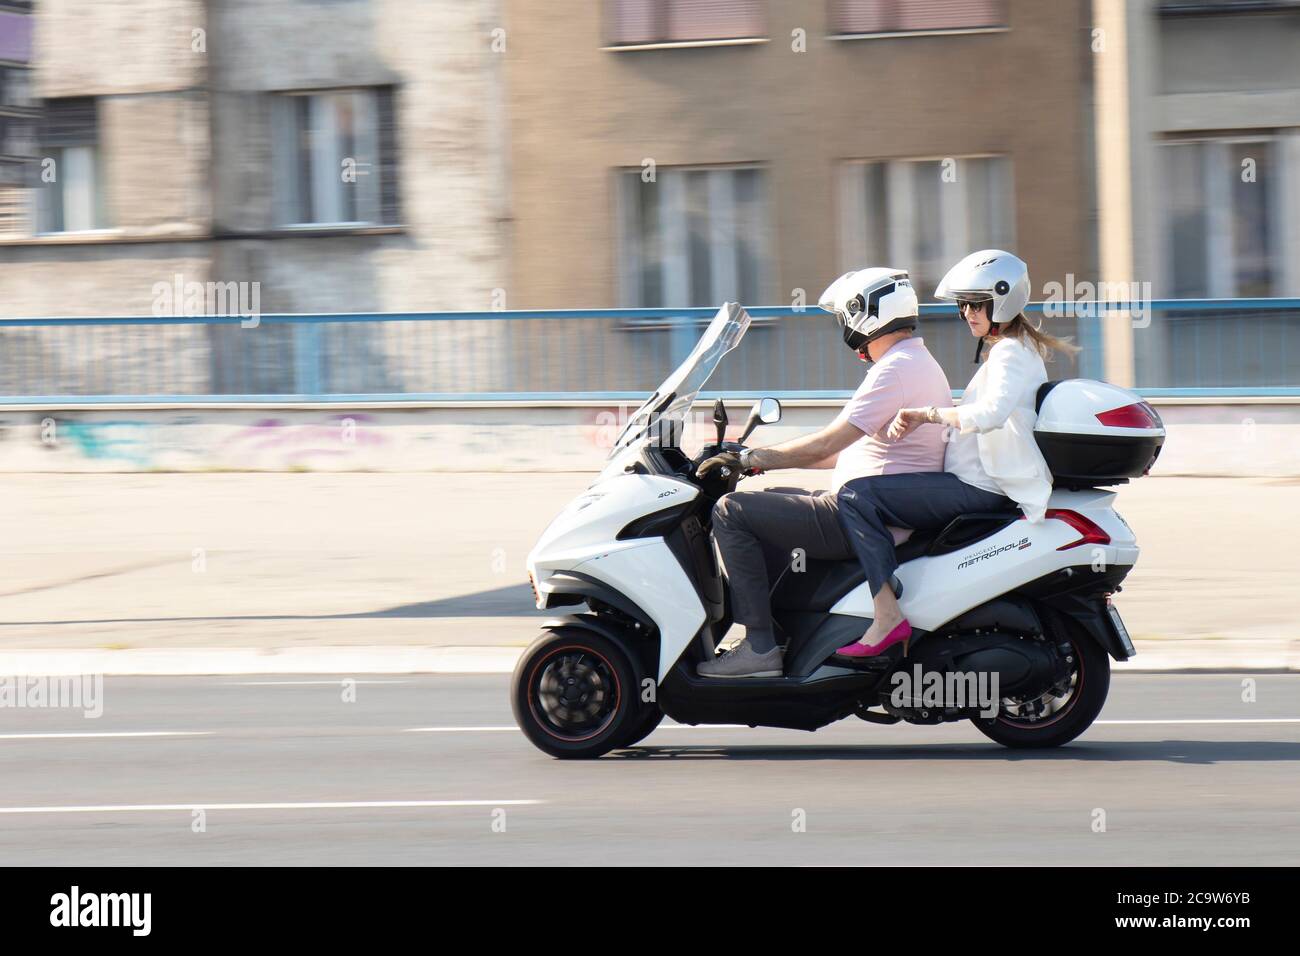 Belgrado, Serbia - 31 luglio 2020: Coppia matura che corre su una moto a tre ruote in città strada, e una donna sta controllando il tempo al suo orologio da polso Foto Stock